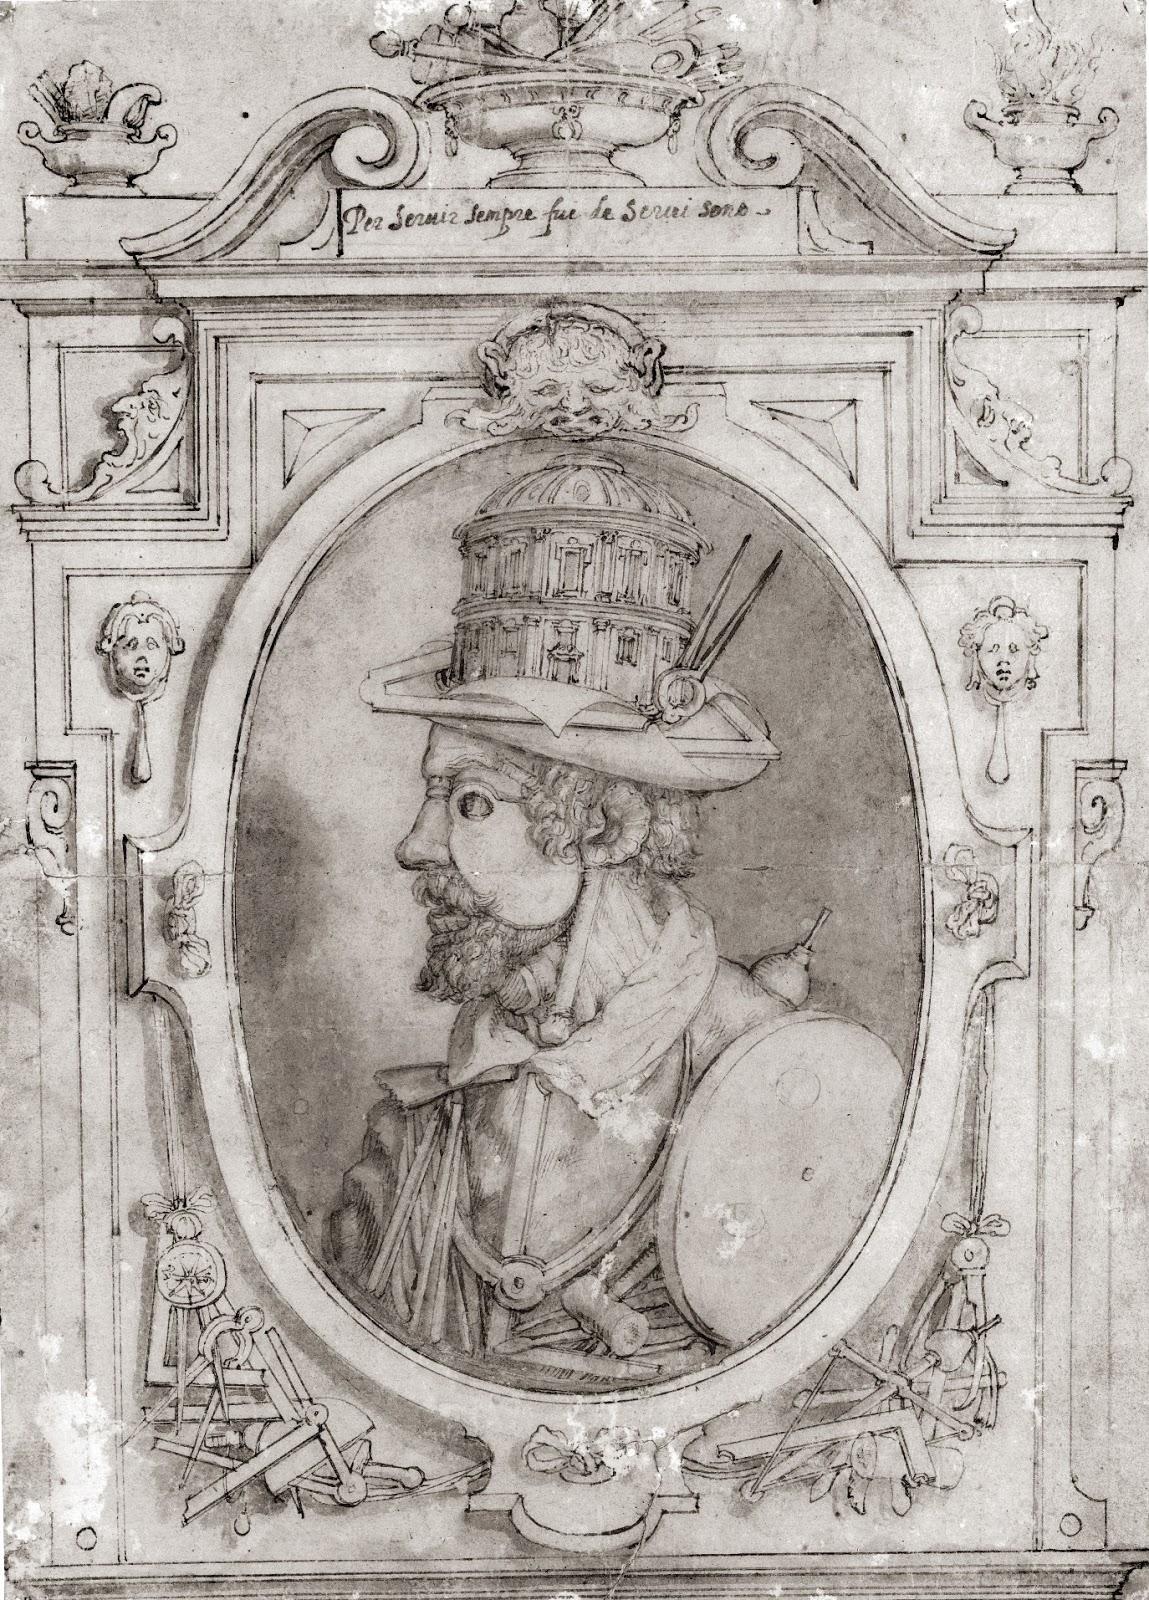 Giuseppe+Arcimboldo-1527-1593 (67).jpg